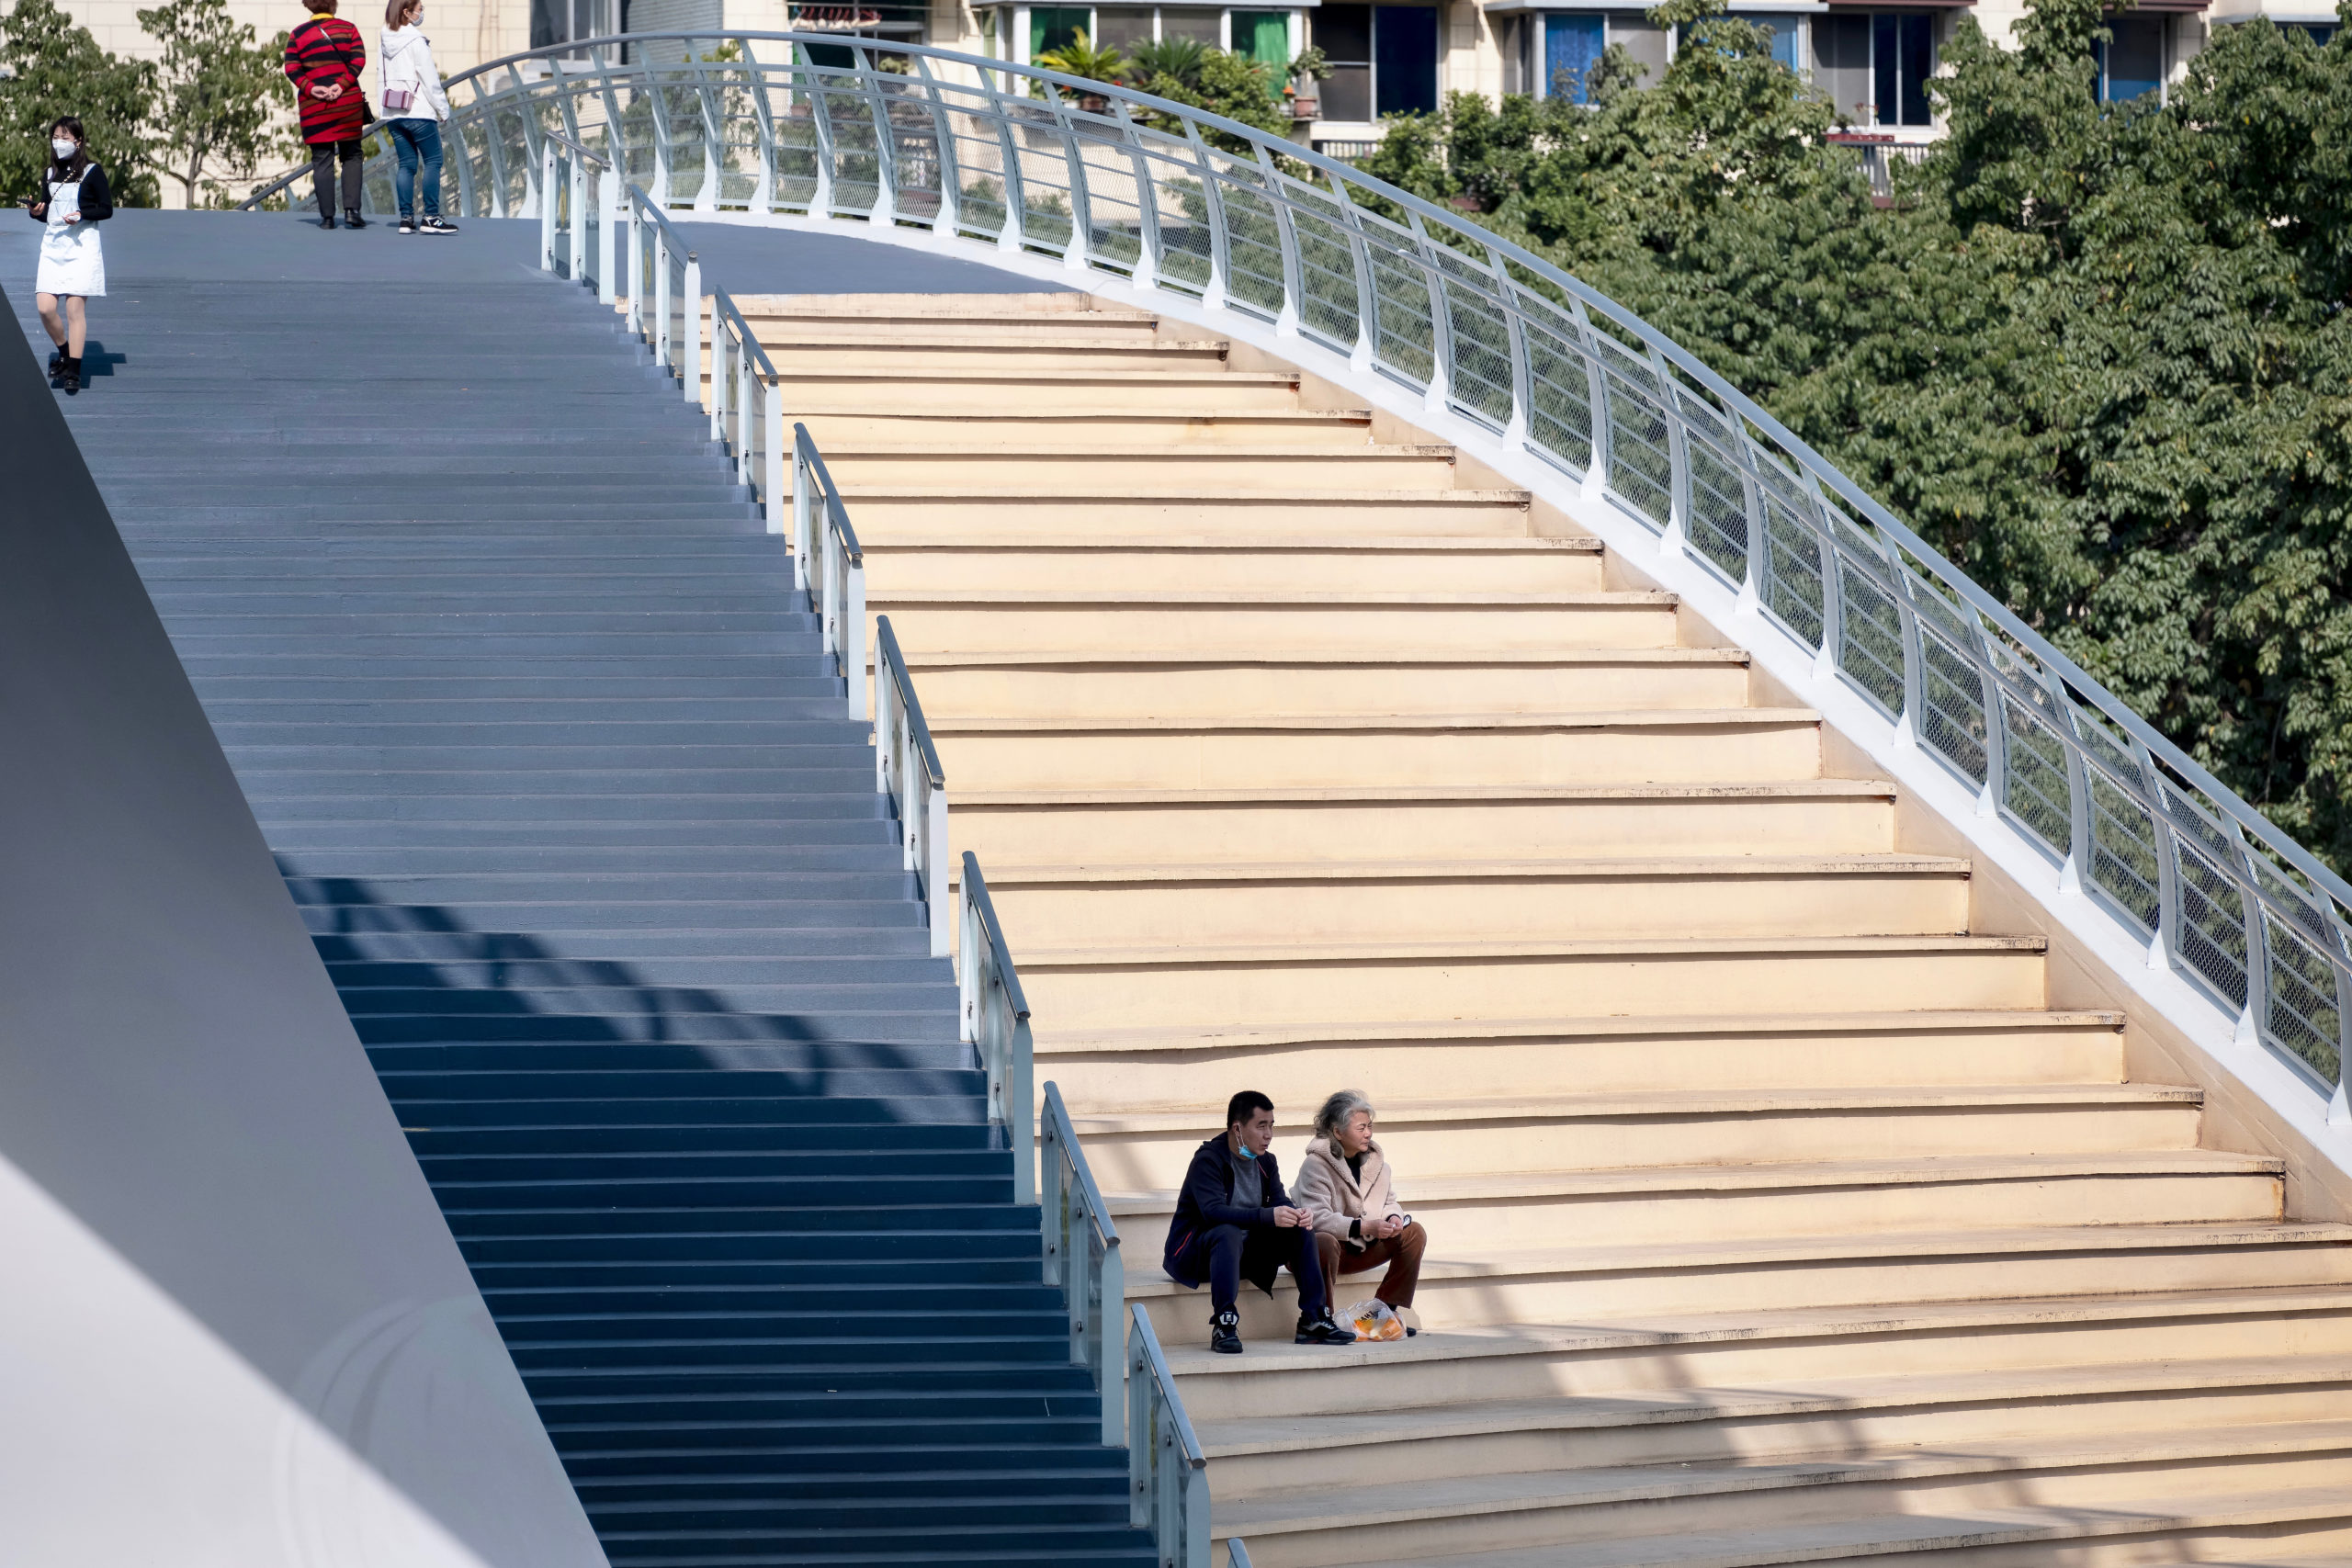 五岔子大橋 Wuchazi Bridge day view showing people on the stairs